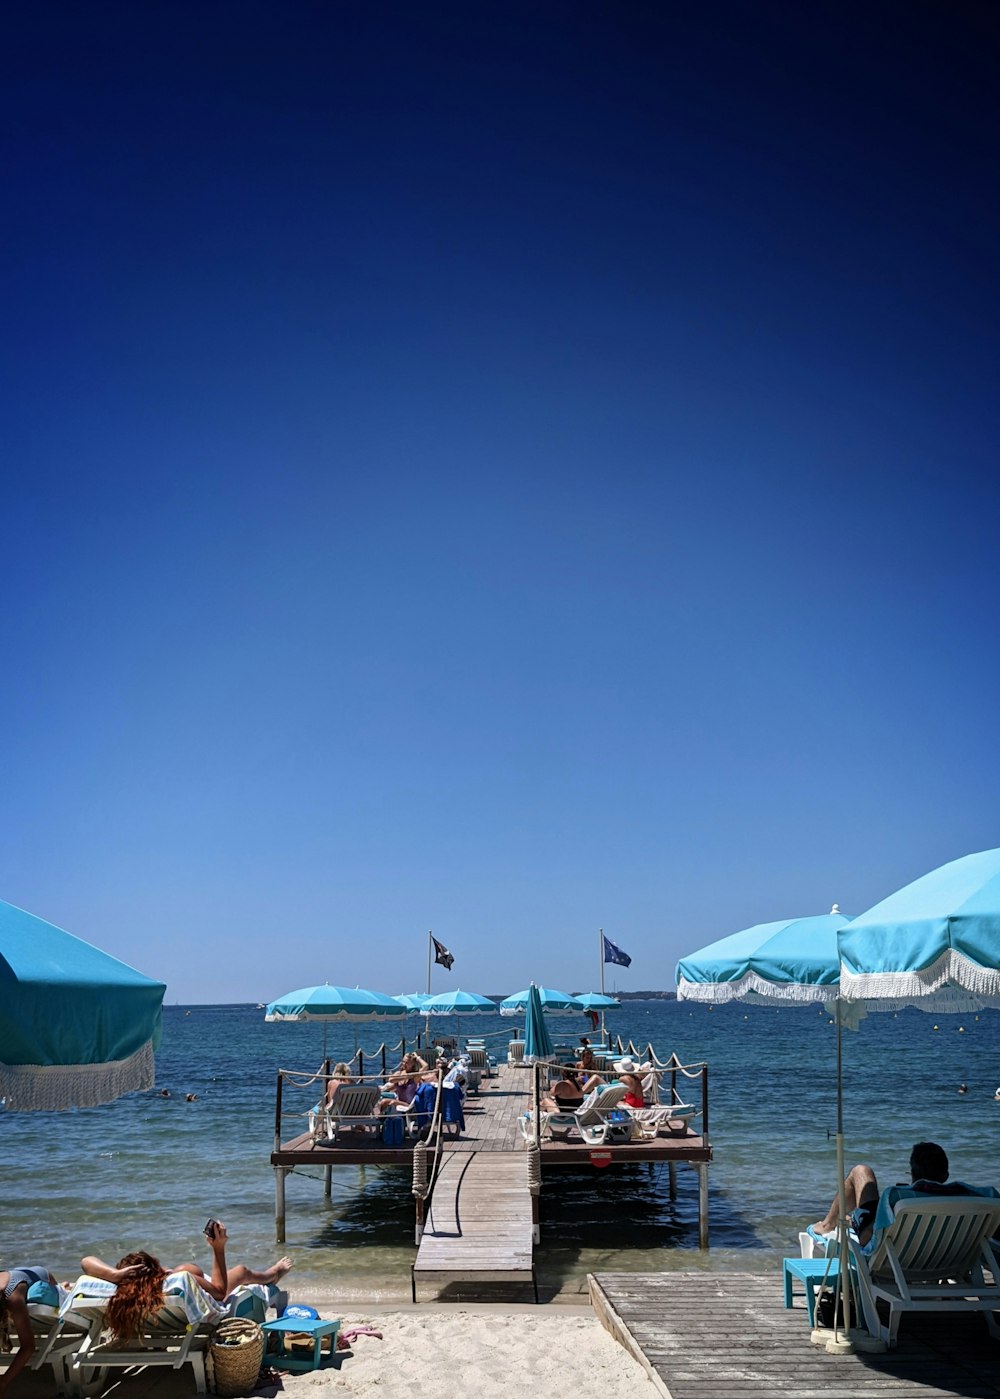 personnes assises sur des chaises de plage sous le ciel bleu pendant la journée